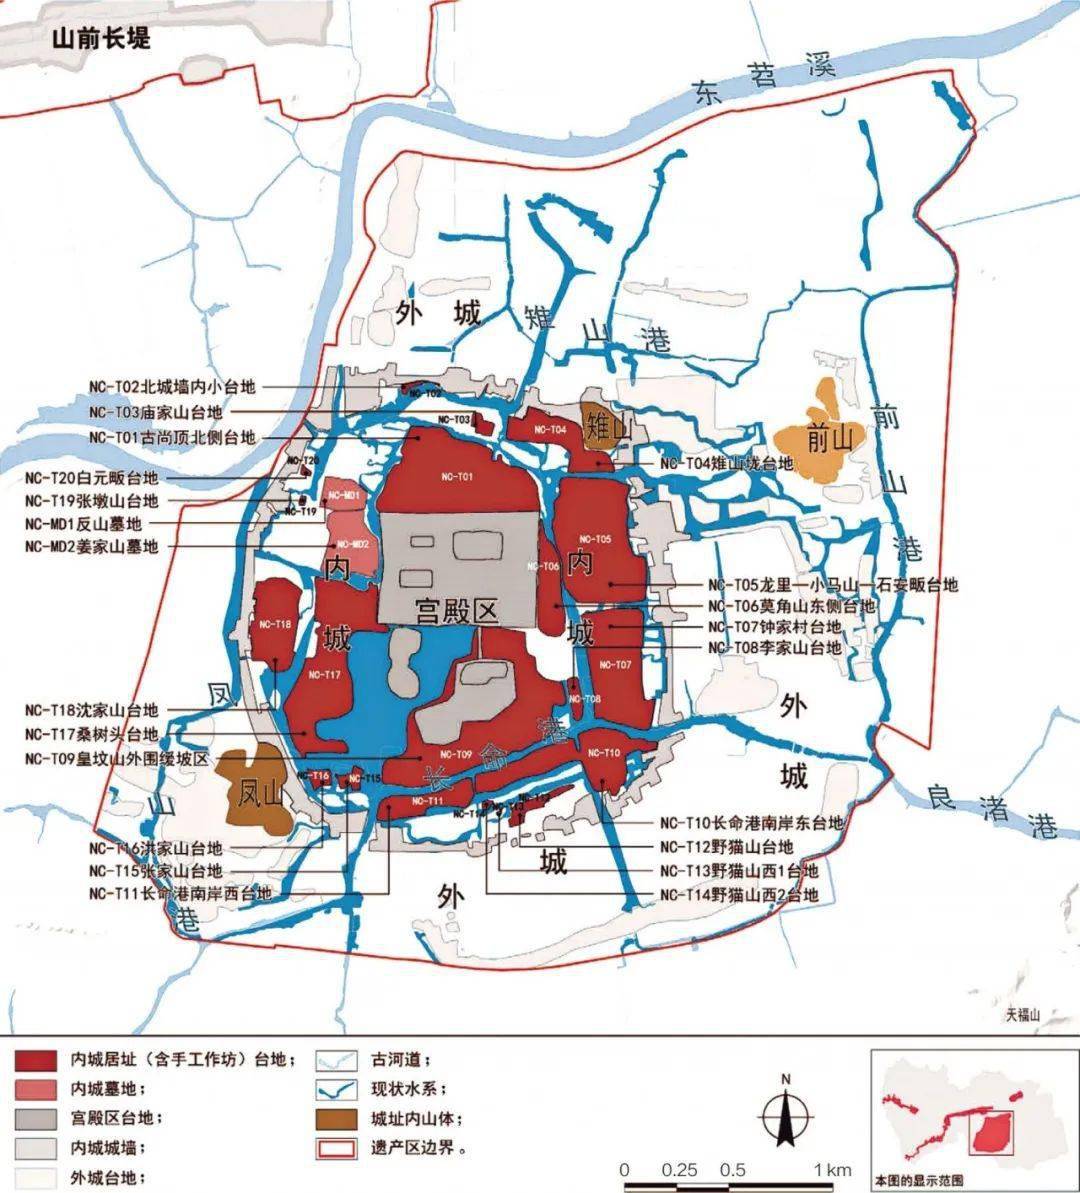 良渚古城遗址公园规划与建设的启示与思考